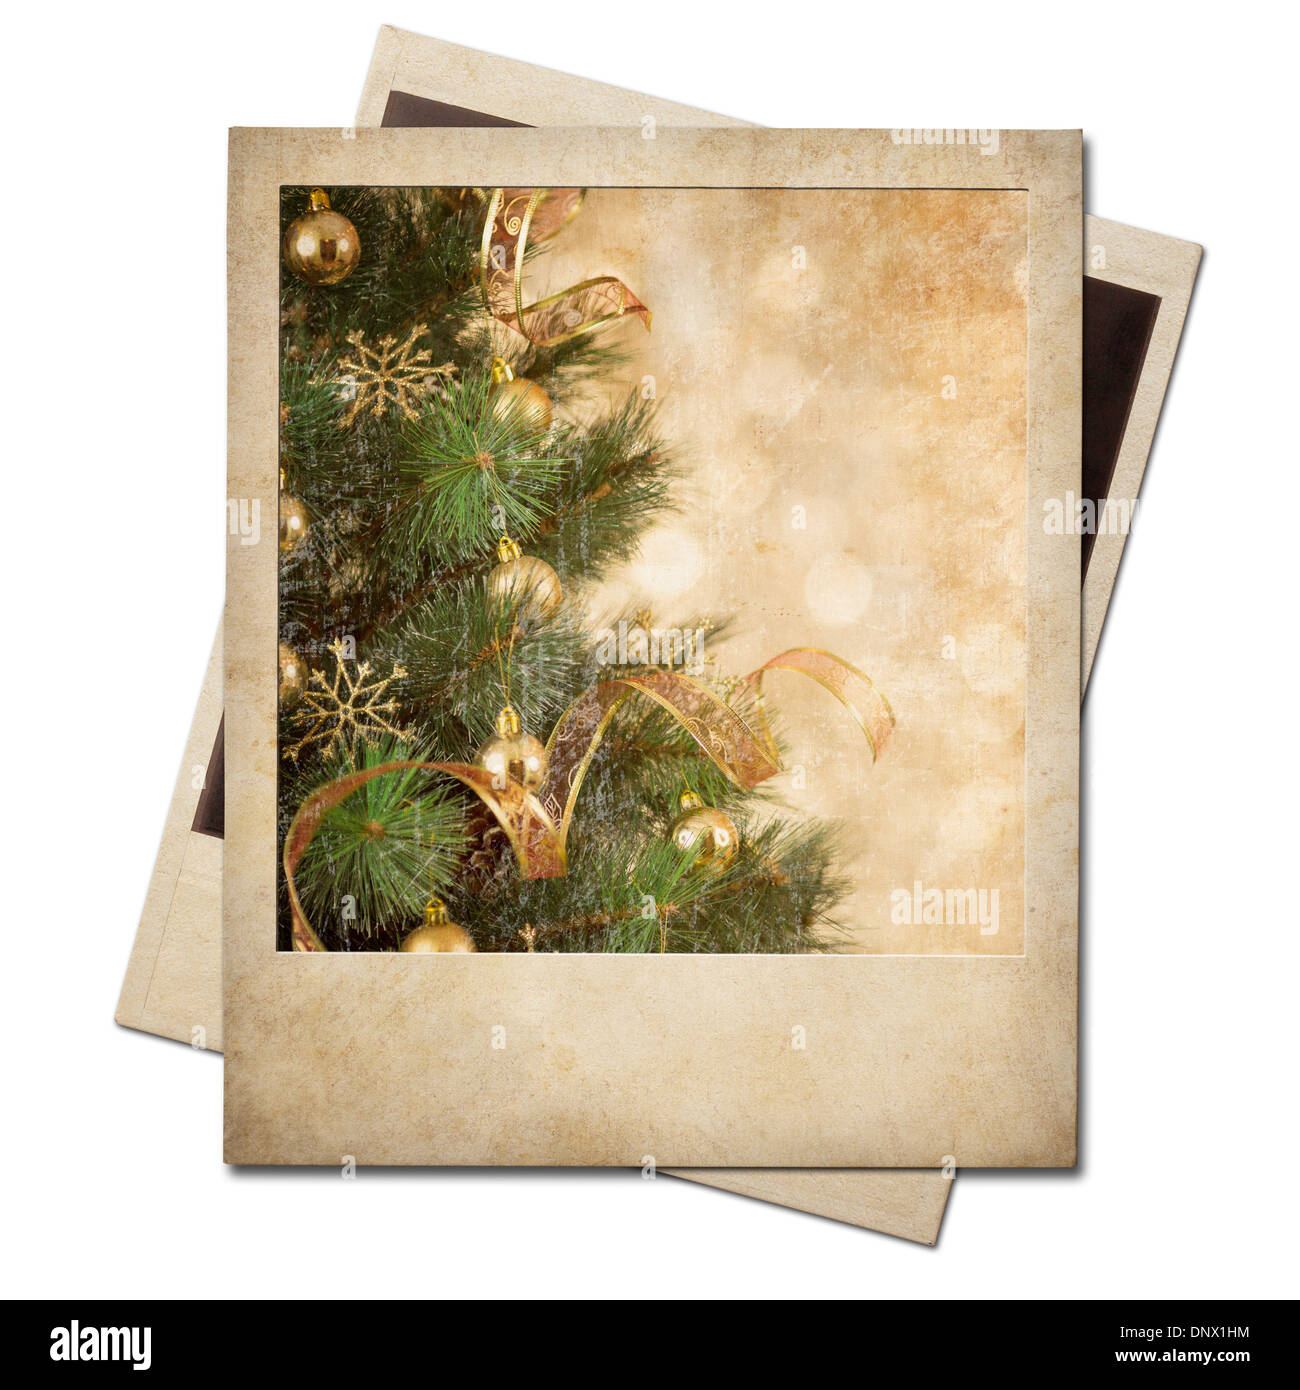 Christmas tree polaroid old photo frame Stock Photo